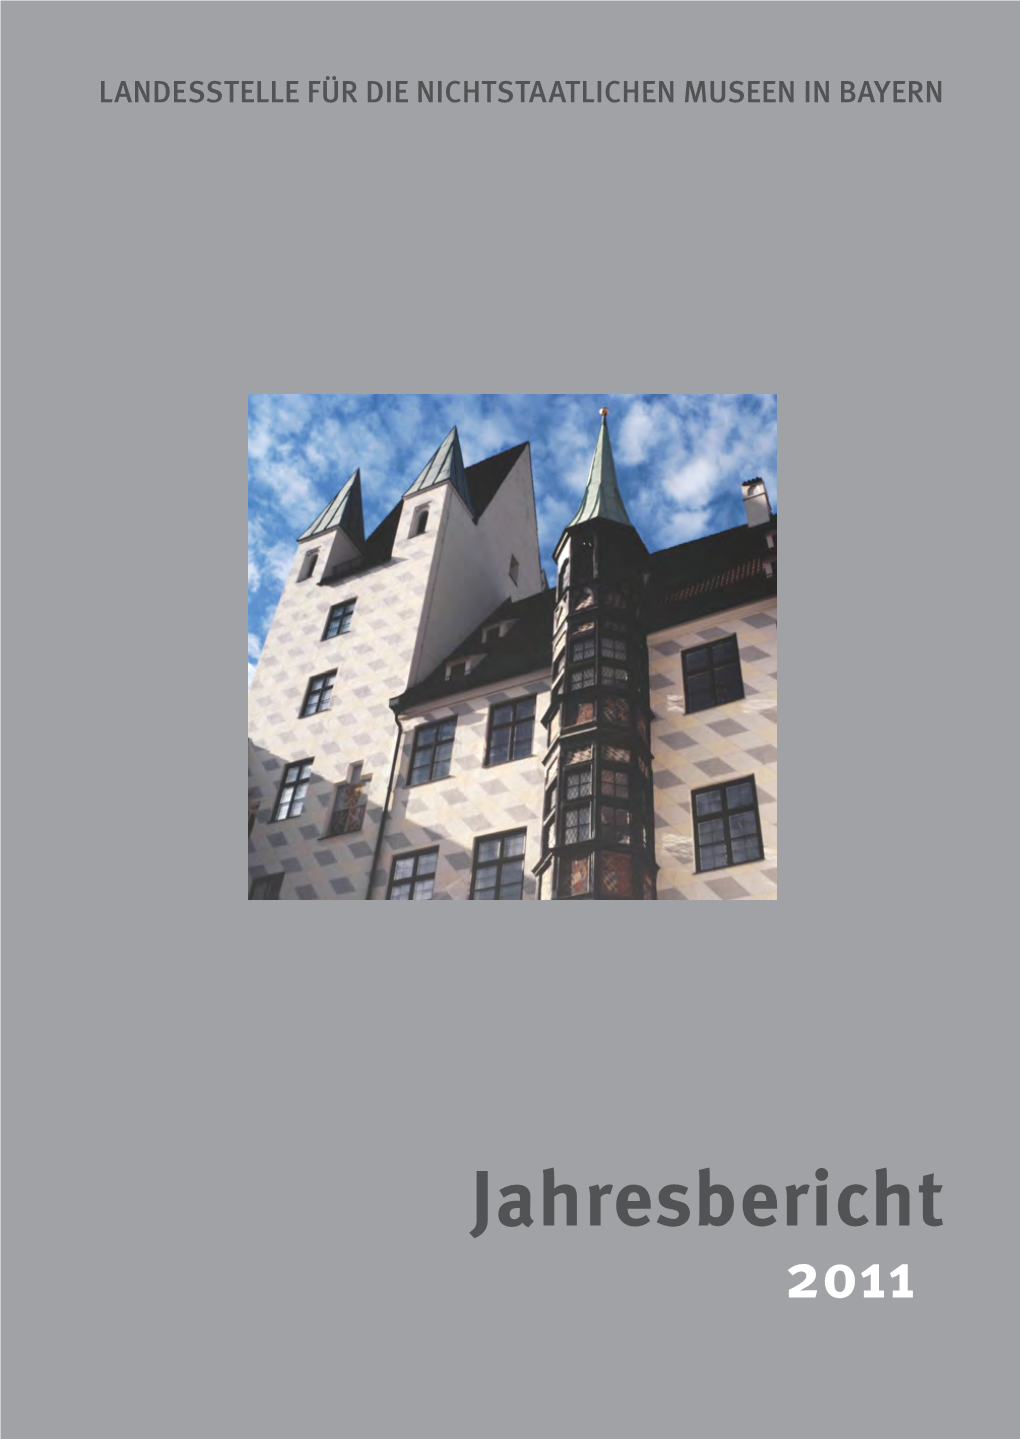 Jahresbericht 2011 Landesstelle Für Die Nichtstaatlichen Museen in Bayern Jahresbericht 2011